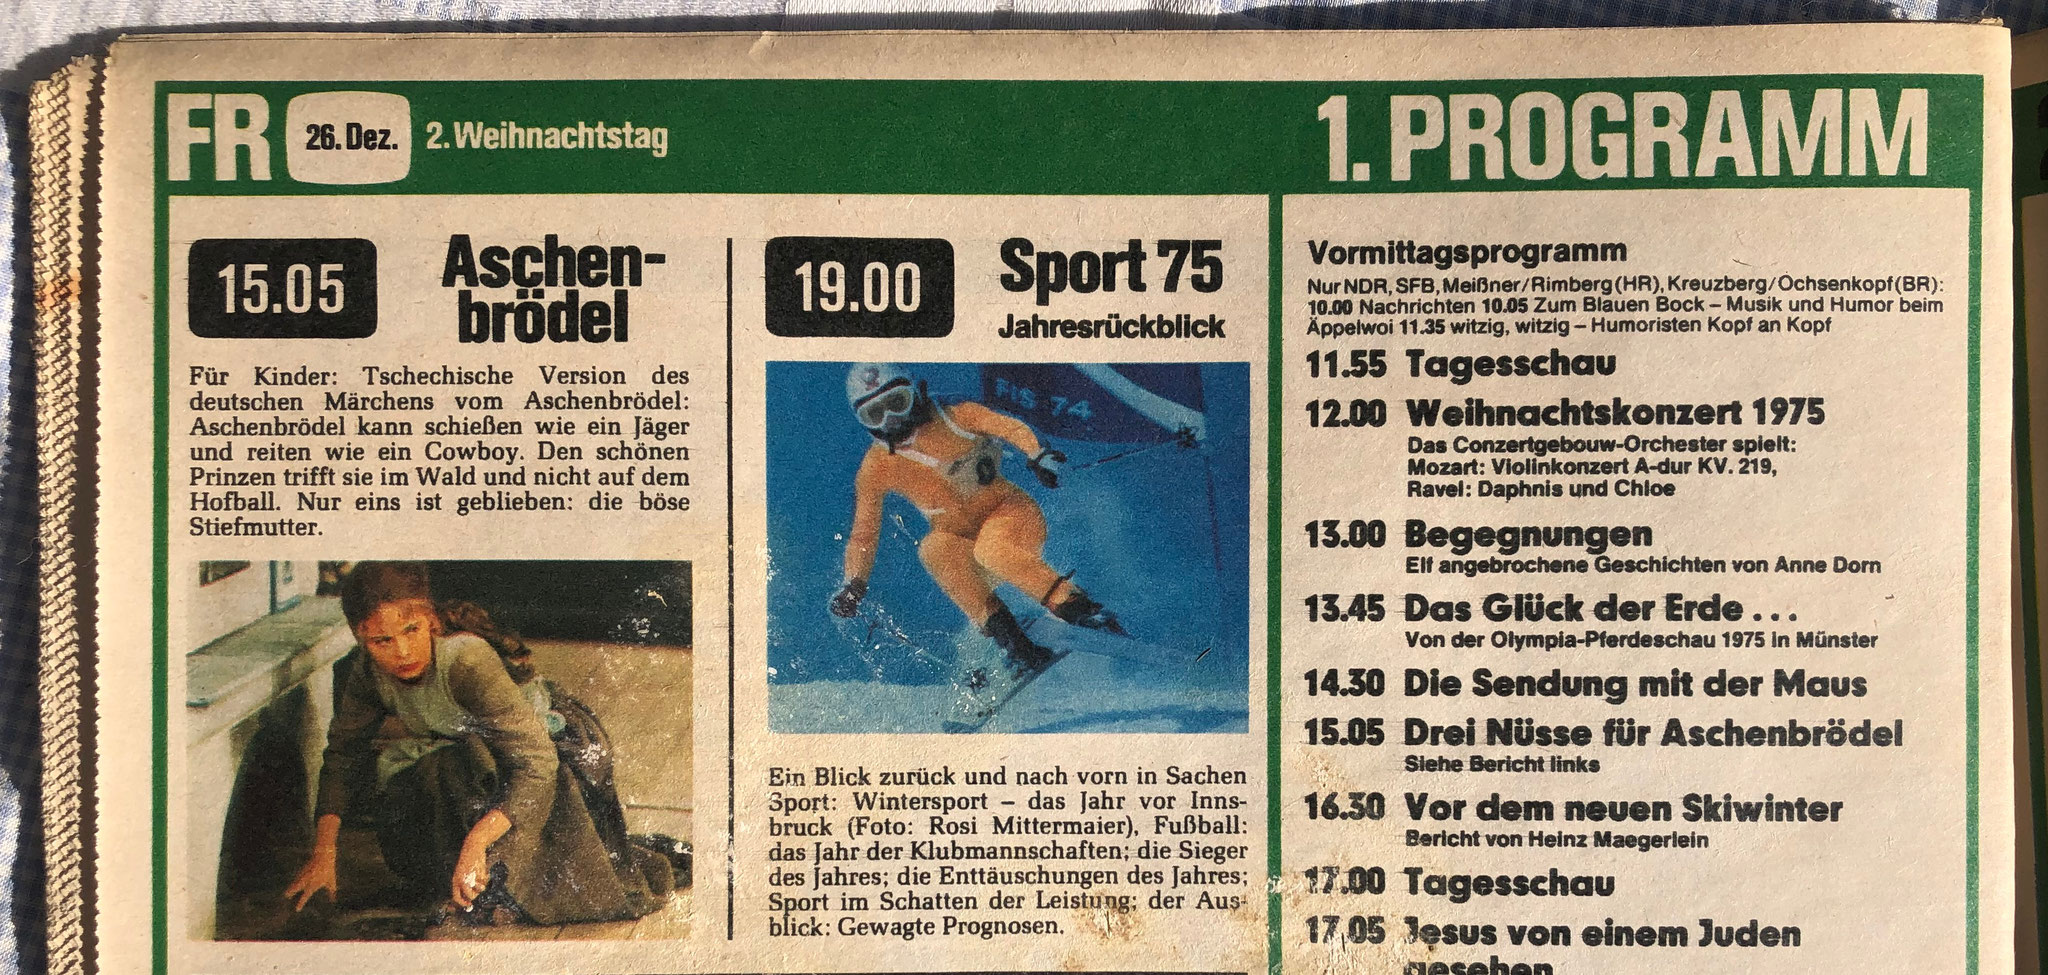 26.12.1975 - Eine Woche nach Kinostart strahlt die ARD 3hfa zum ersten Mal in der BRD im Fernsehen aus - und hört damit nicht mehr auf. Manchmal als Zweiteilter gesendet vergeht nur in den 80ern und 90ern mal ein Weihnachten ohne 3hfa im Fernsehen.